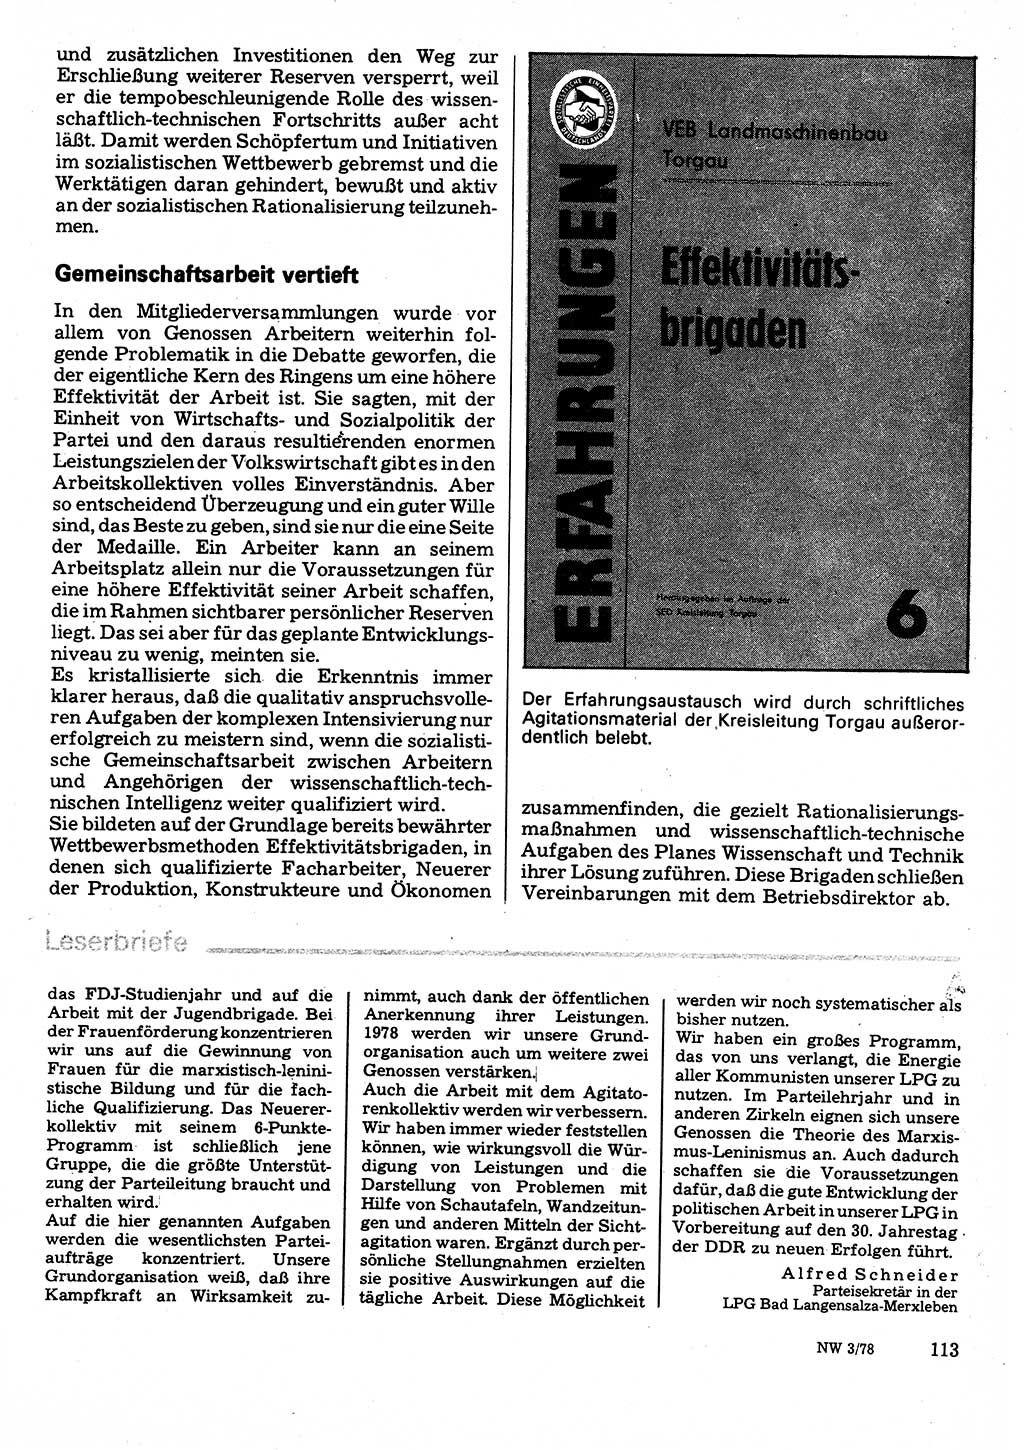 Neuer Weg (NW), Organ des Zentralkomitees (ZK) der SED (Sozialistische Einheitspartei Deutschlands) für Fragen des Parteilebens, 33. Jahrgang [Deutsche Demokratische Republik (DDR)] 1978, Seite 113 (NW ZK SED DDR 1978, S. 113)